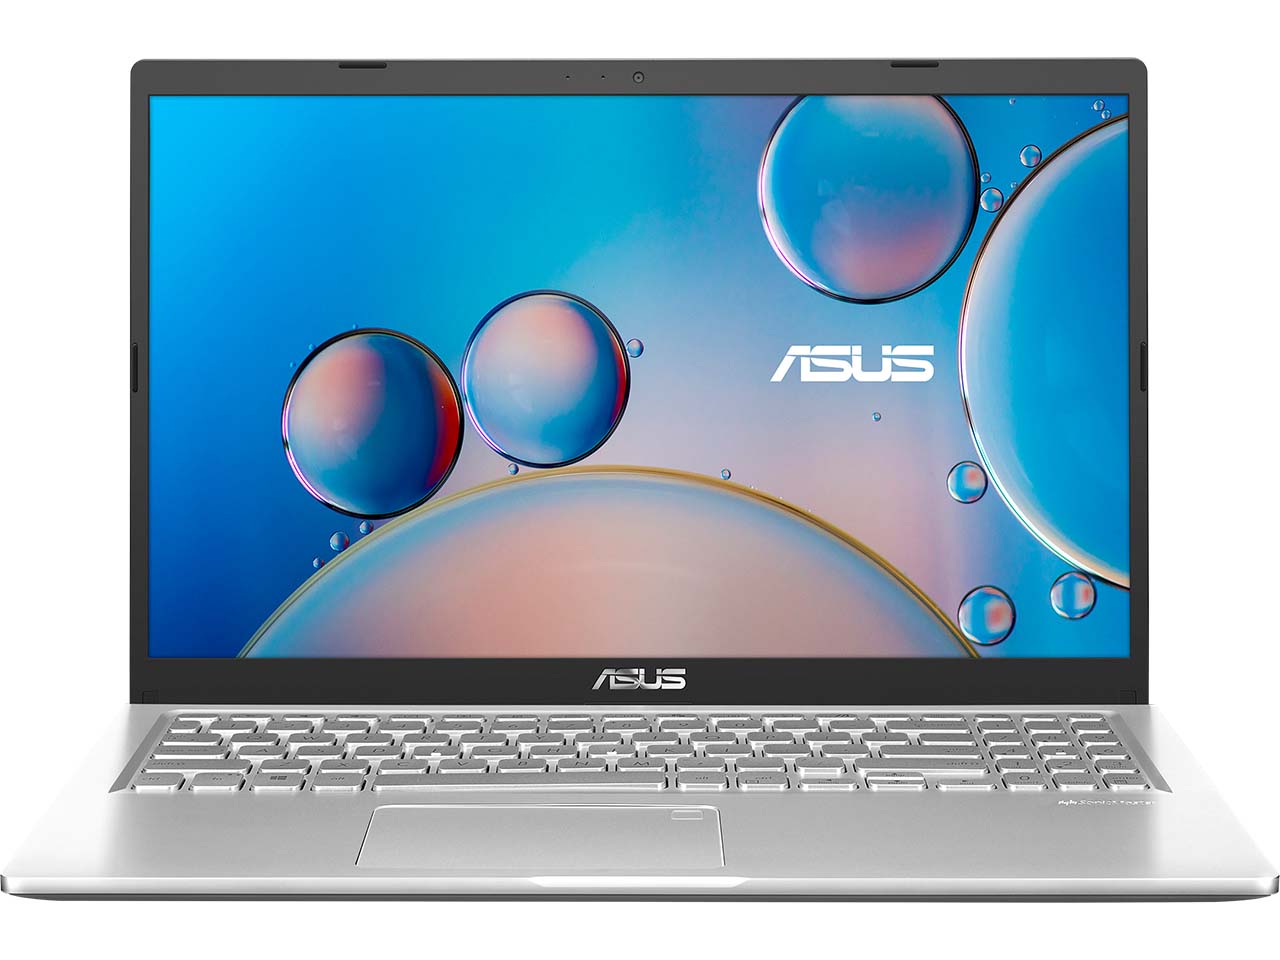 لپ تاپ 15.6 اینچ ایسوس مدل ASUS X515EP Intel i7 1165G7 2.8 GHz, 8GB Ram,512GB SSD, MX330 2GB GDDR5, FHD - فروشگاه اینترنتی الماس- مرجع تخصصی قطعات لپتاپ و کامپیوتر